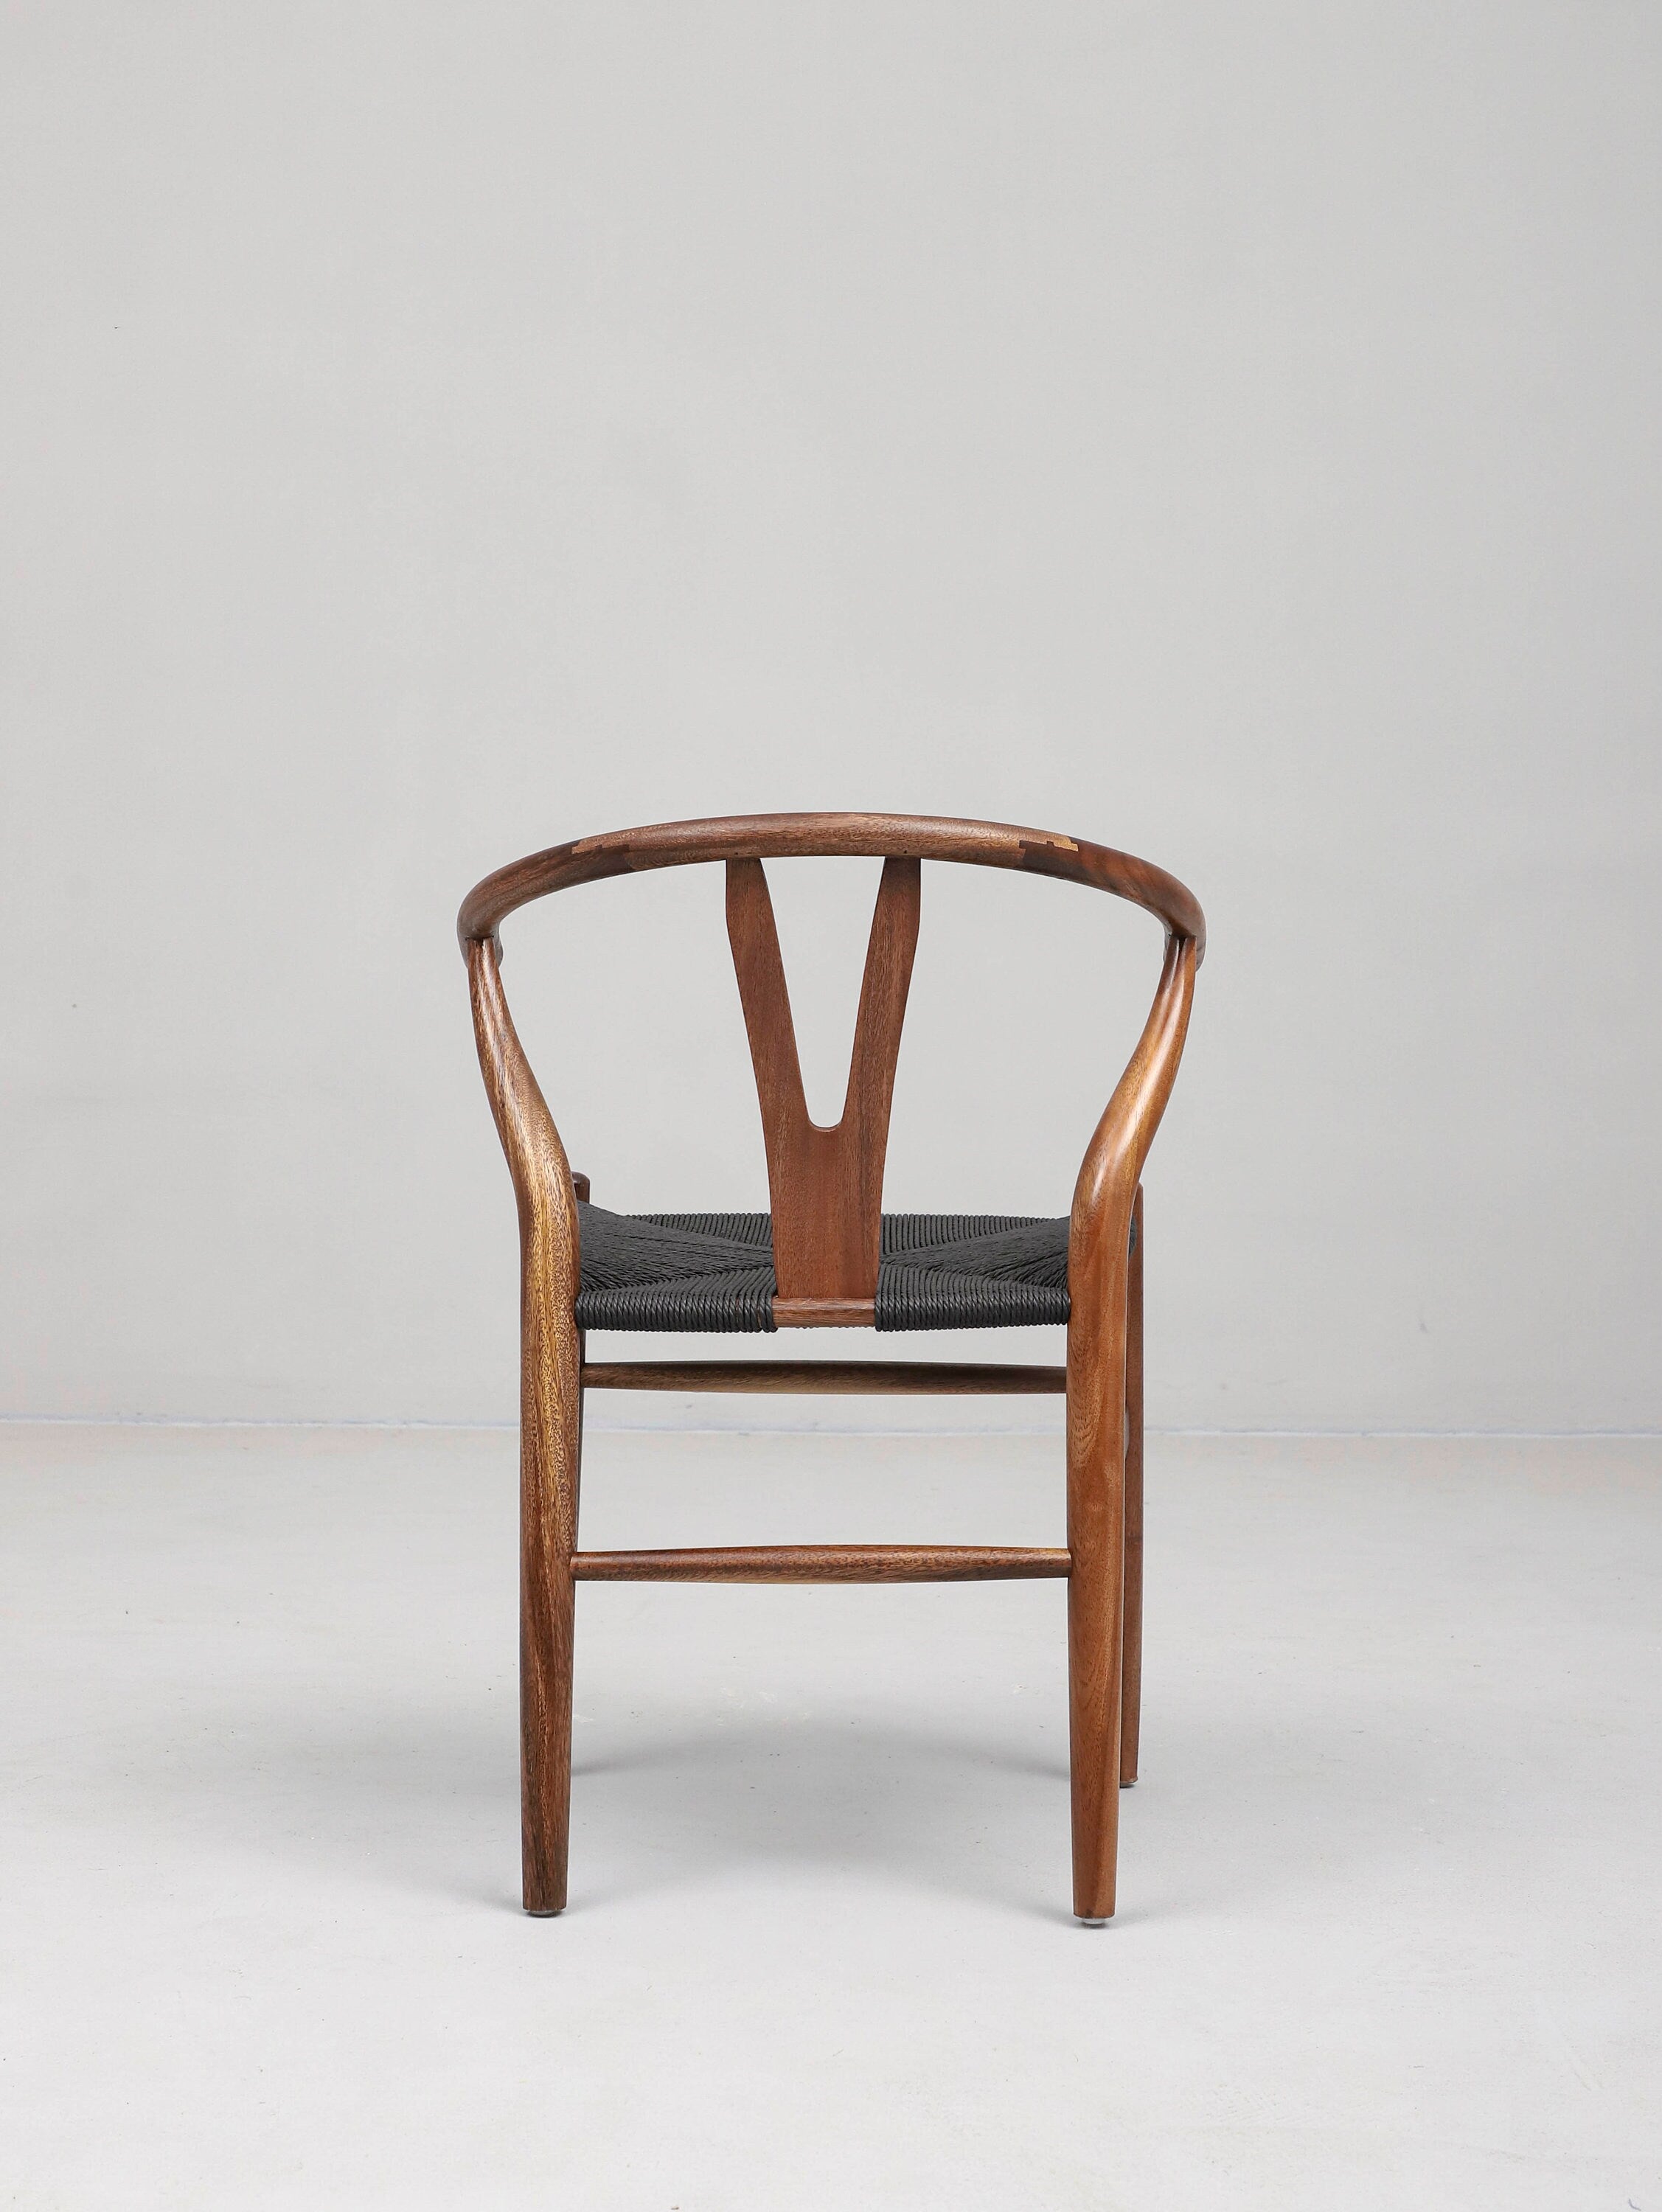 Sedia in legno con sedile in canapa, sedia in legno dal design semplice, sedia moderna della metà del secolo, sedia in pelle, sedia da pranzo in pelle